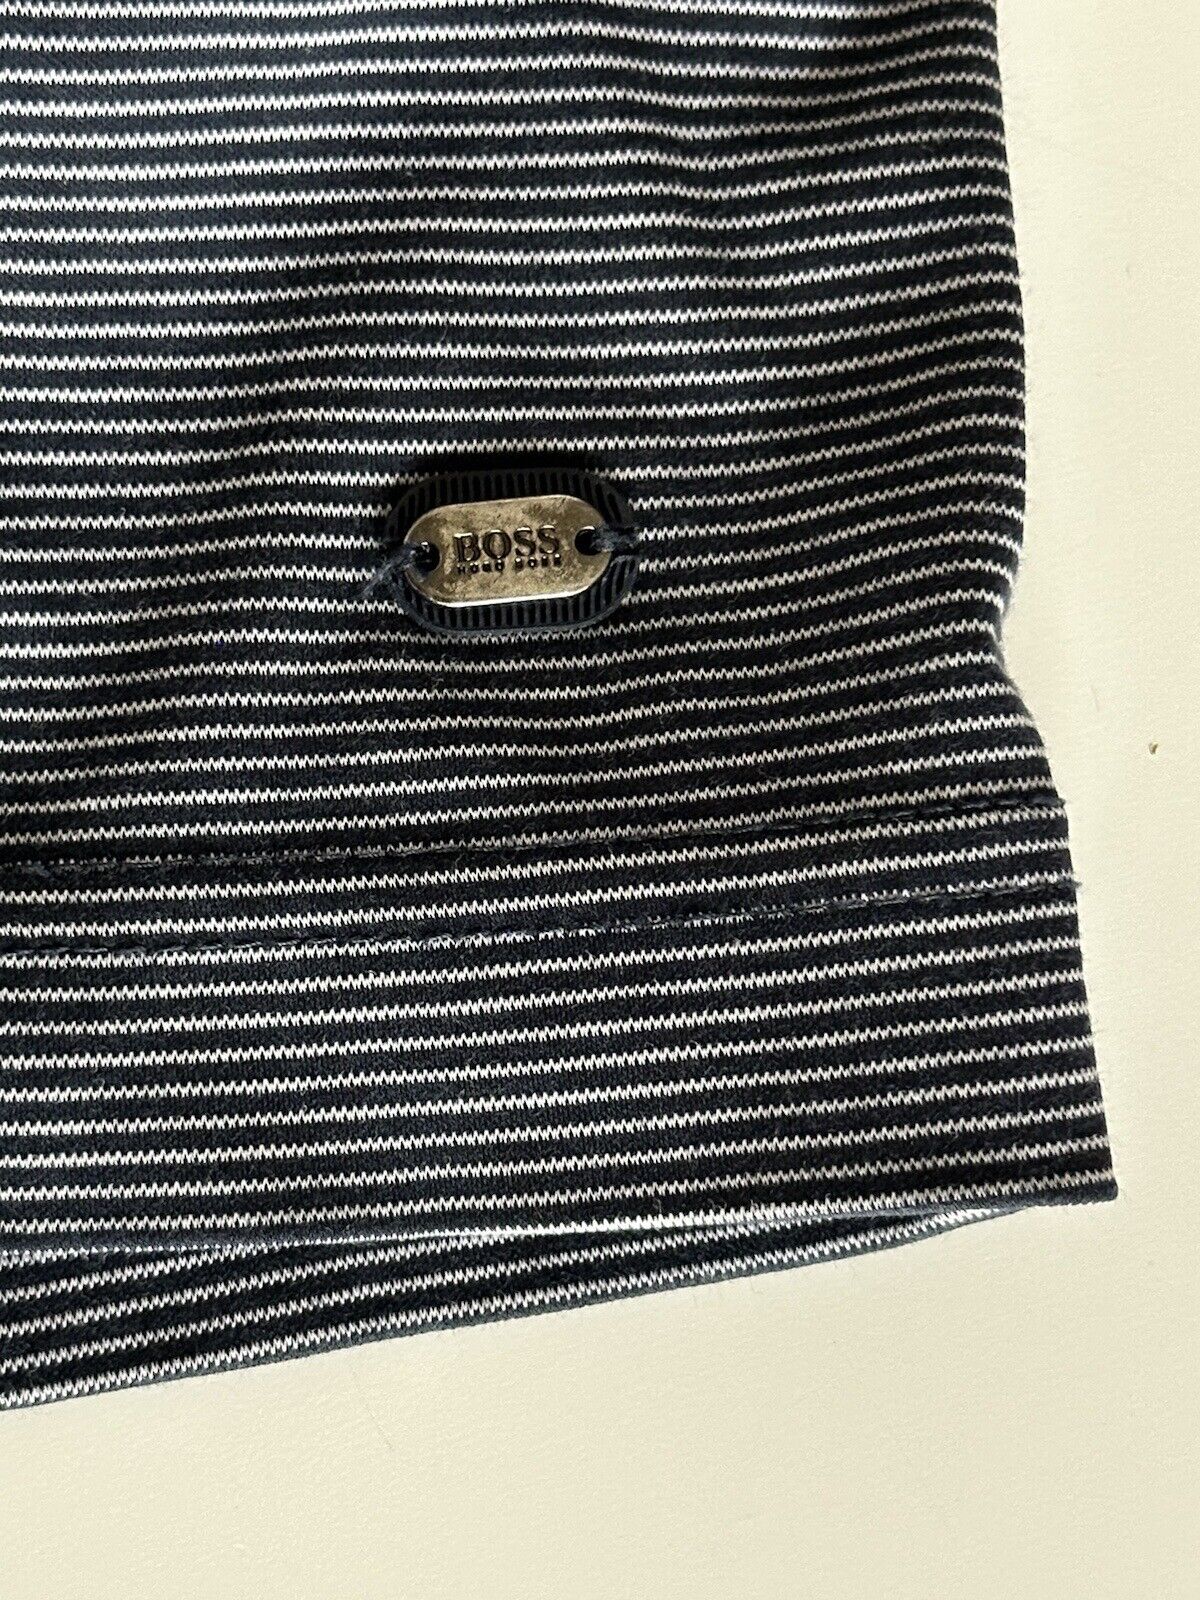 Boss Hugo Boss Green Label Short Sleeve Striped Blue Polo T-Shirt XL